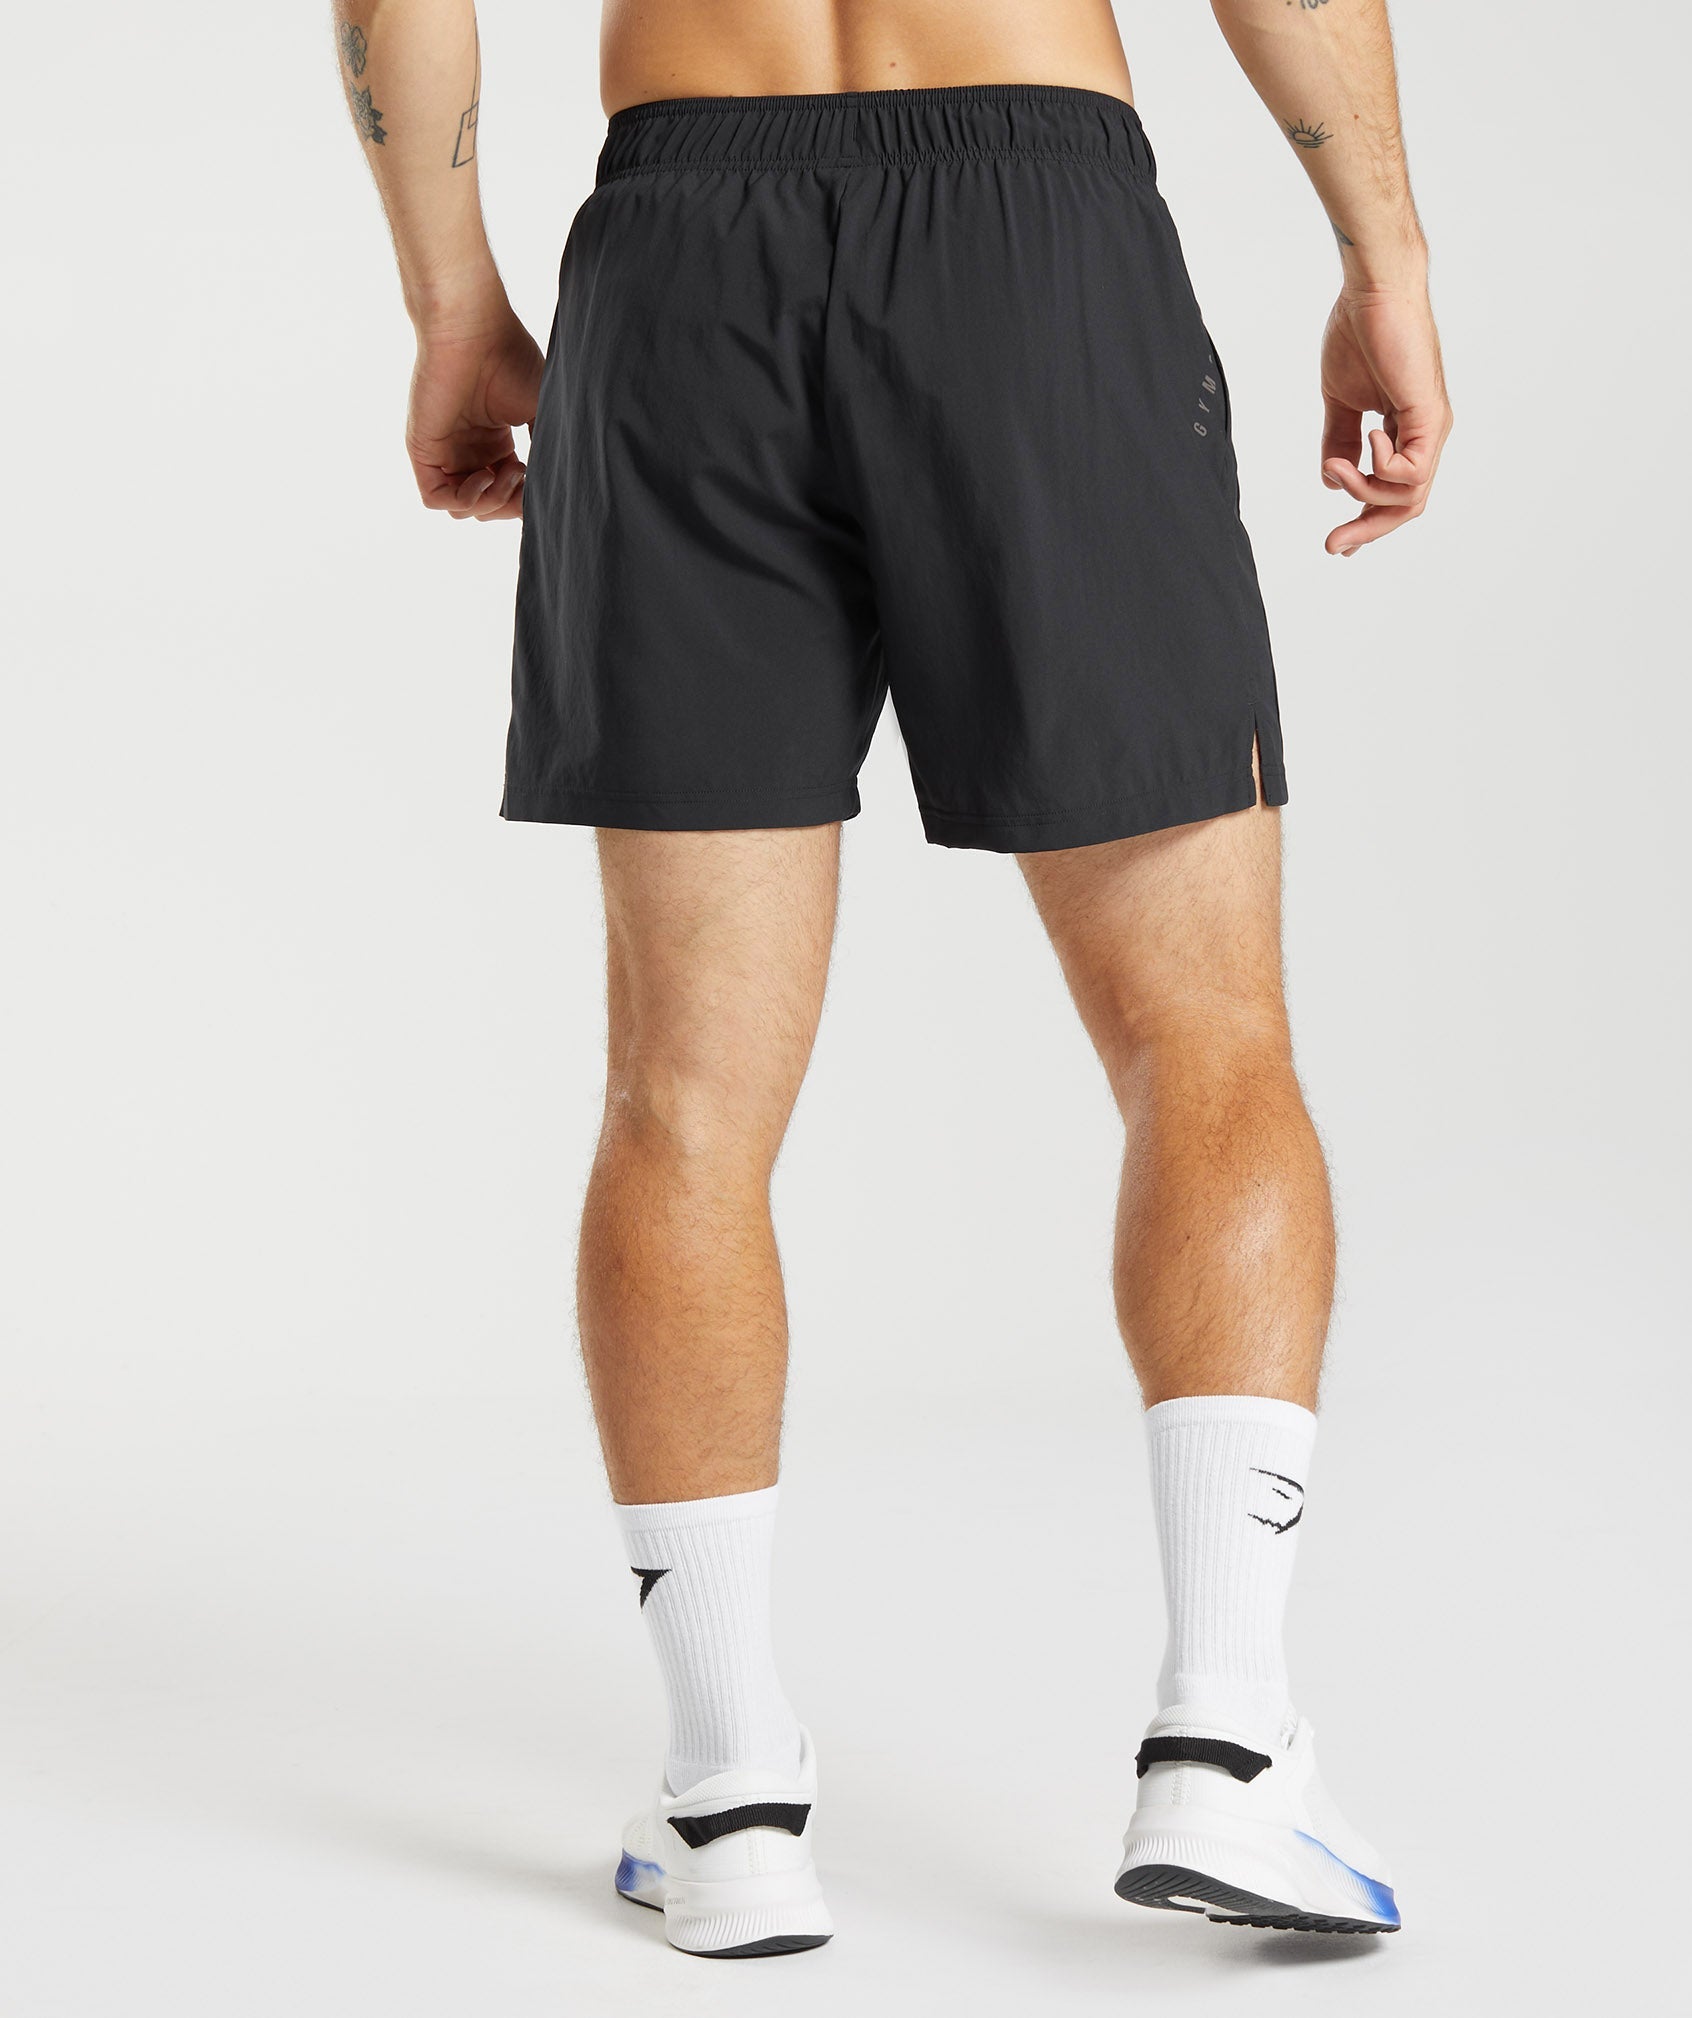 Shorts de sport pour homme - Shorts running et musculation – Fitgearparis